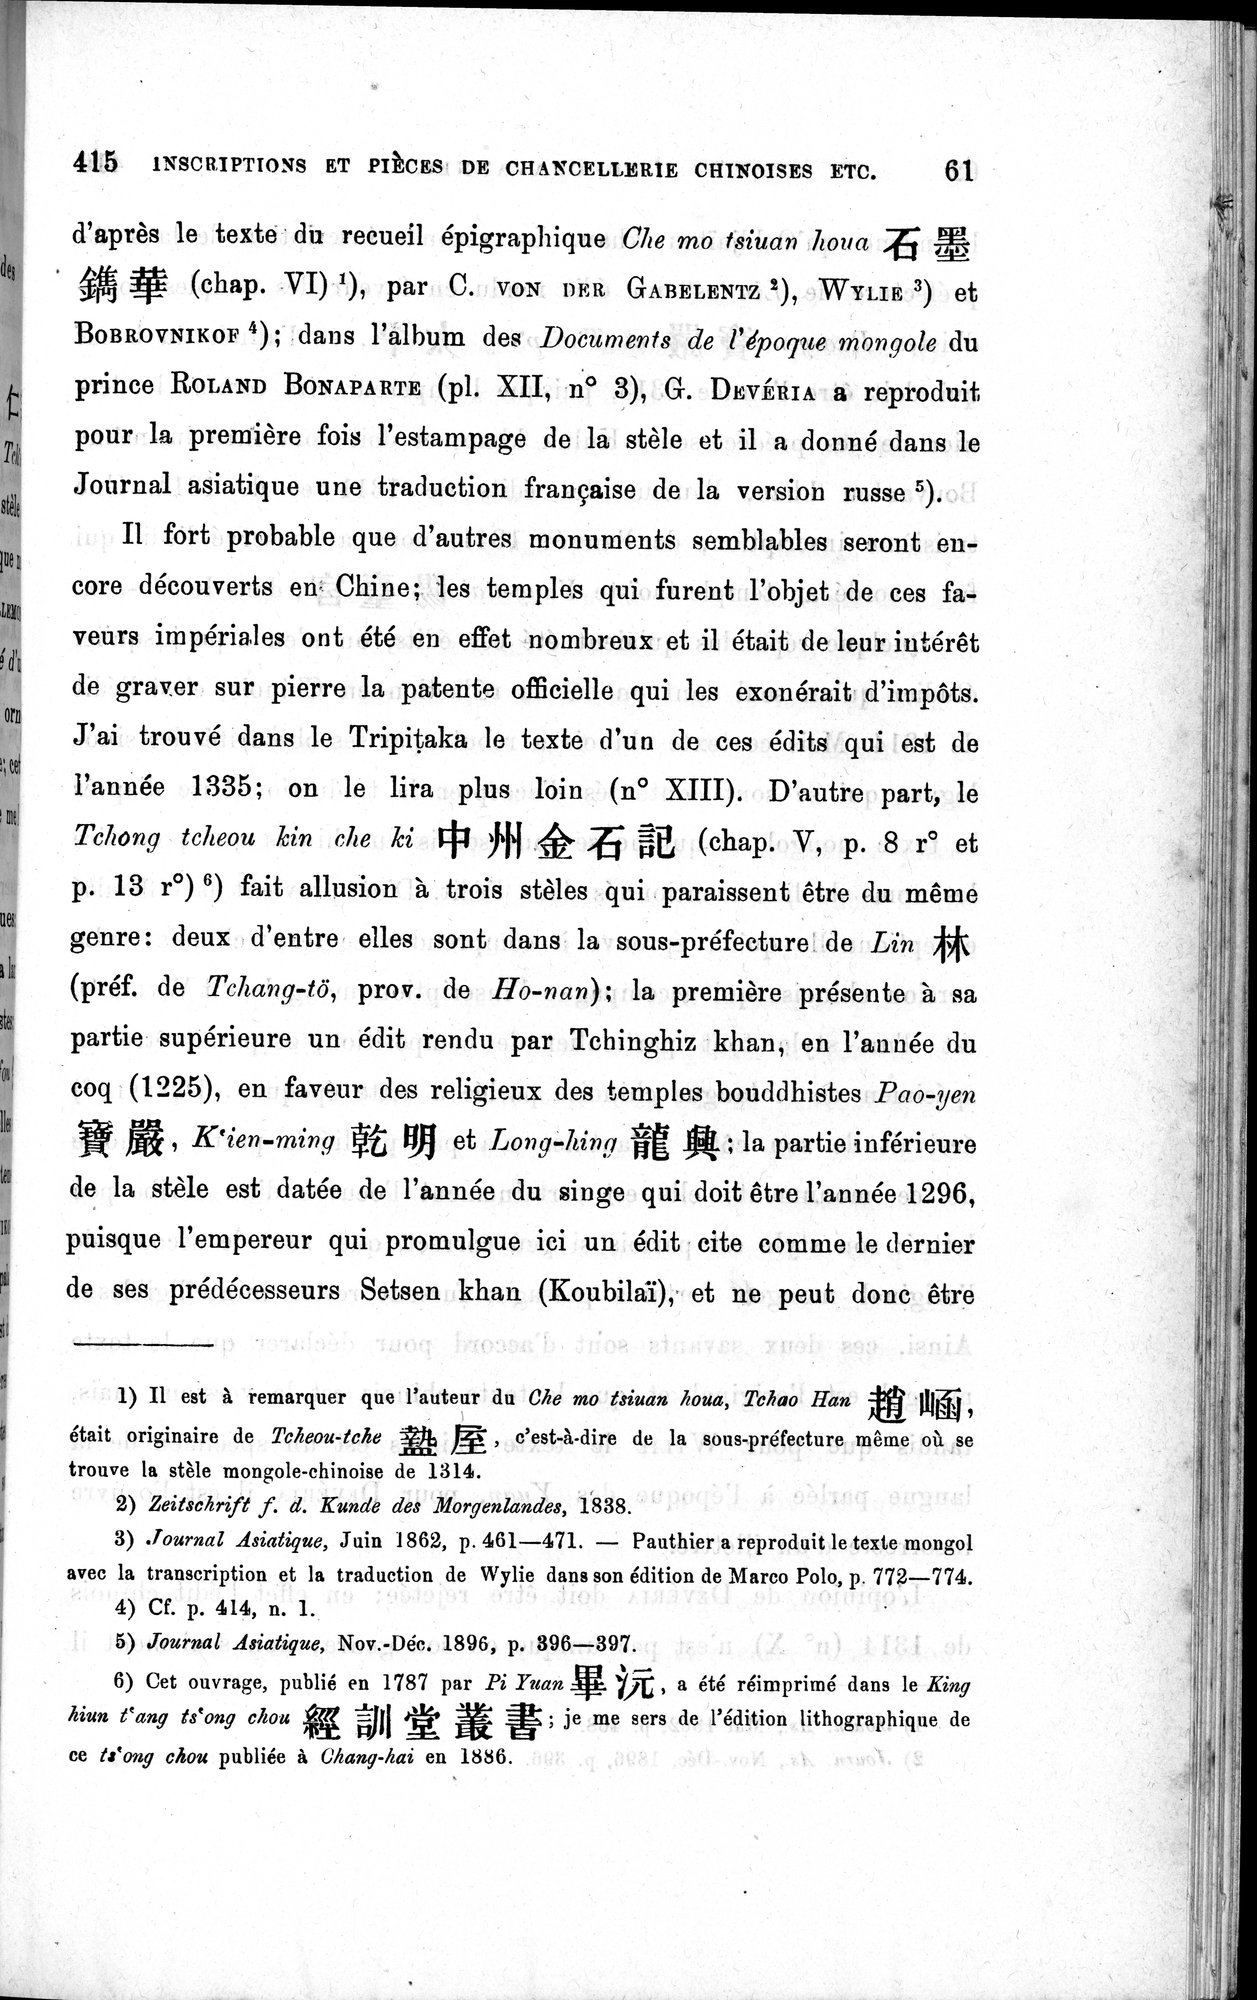 Inscriptions et pièces de Chancellerie Chinoises de l'époque mongol : vol.1 / Page 71 (Grayscale High Resolution Image)